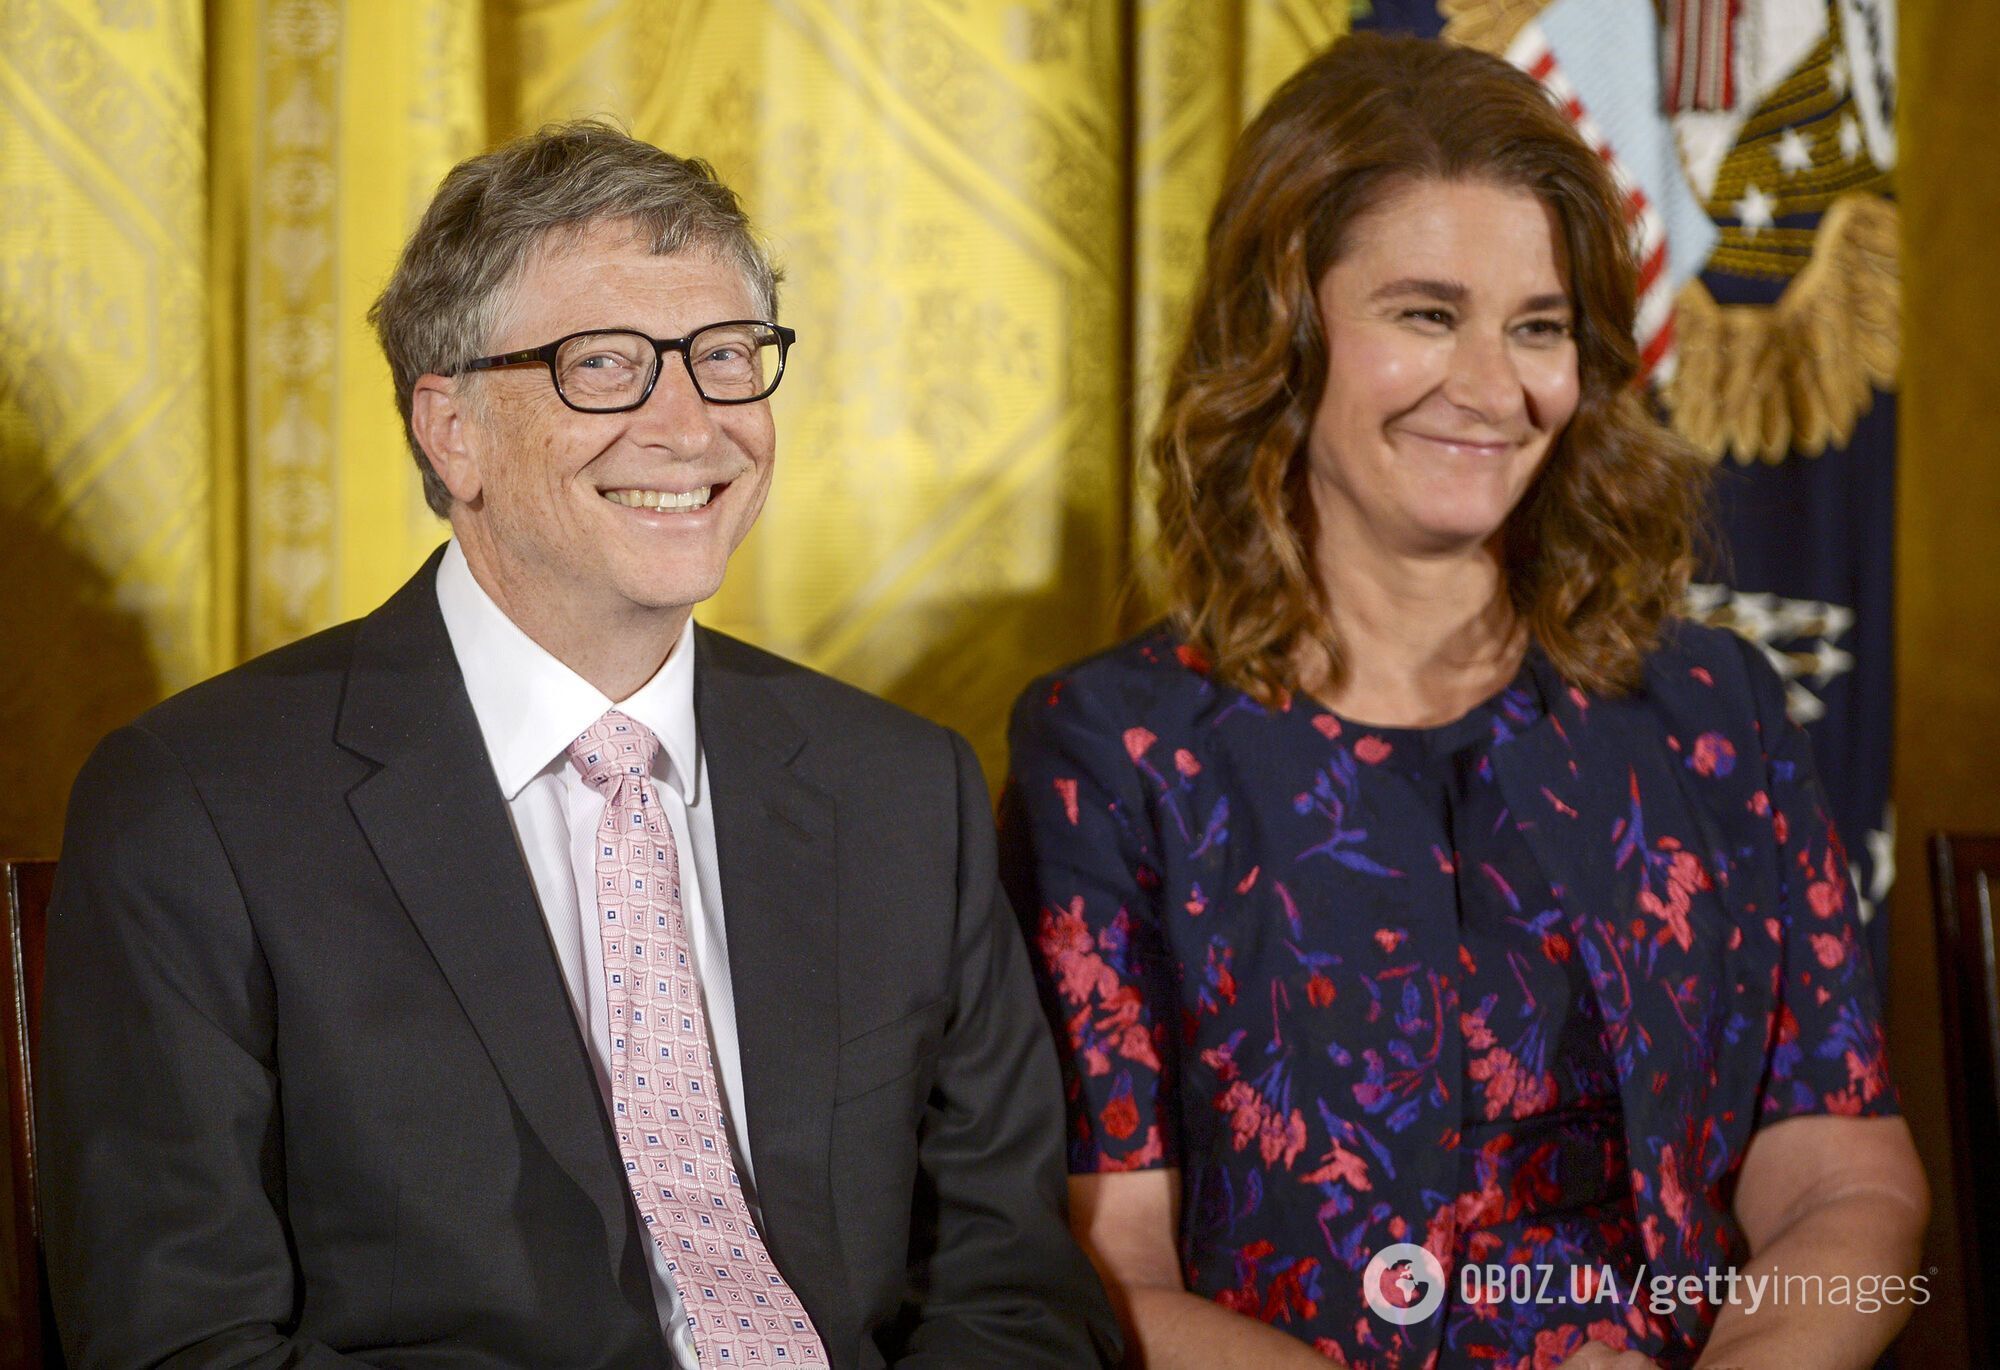 Яку частку акцій Білл Гейтс переказав дружині в день новини про розлучення